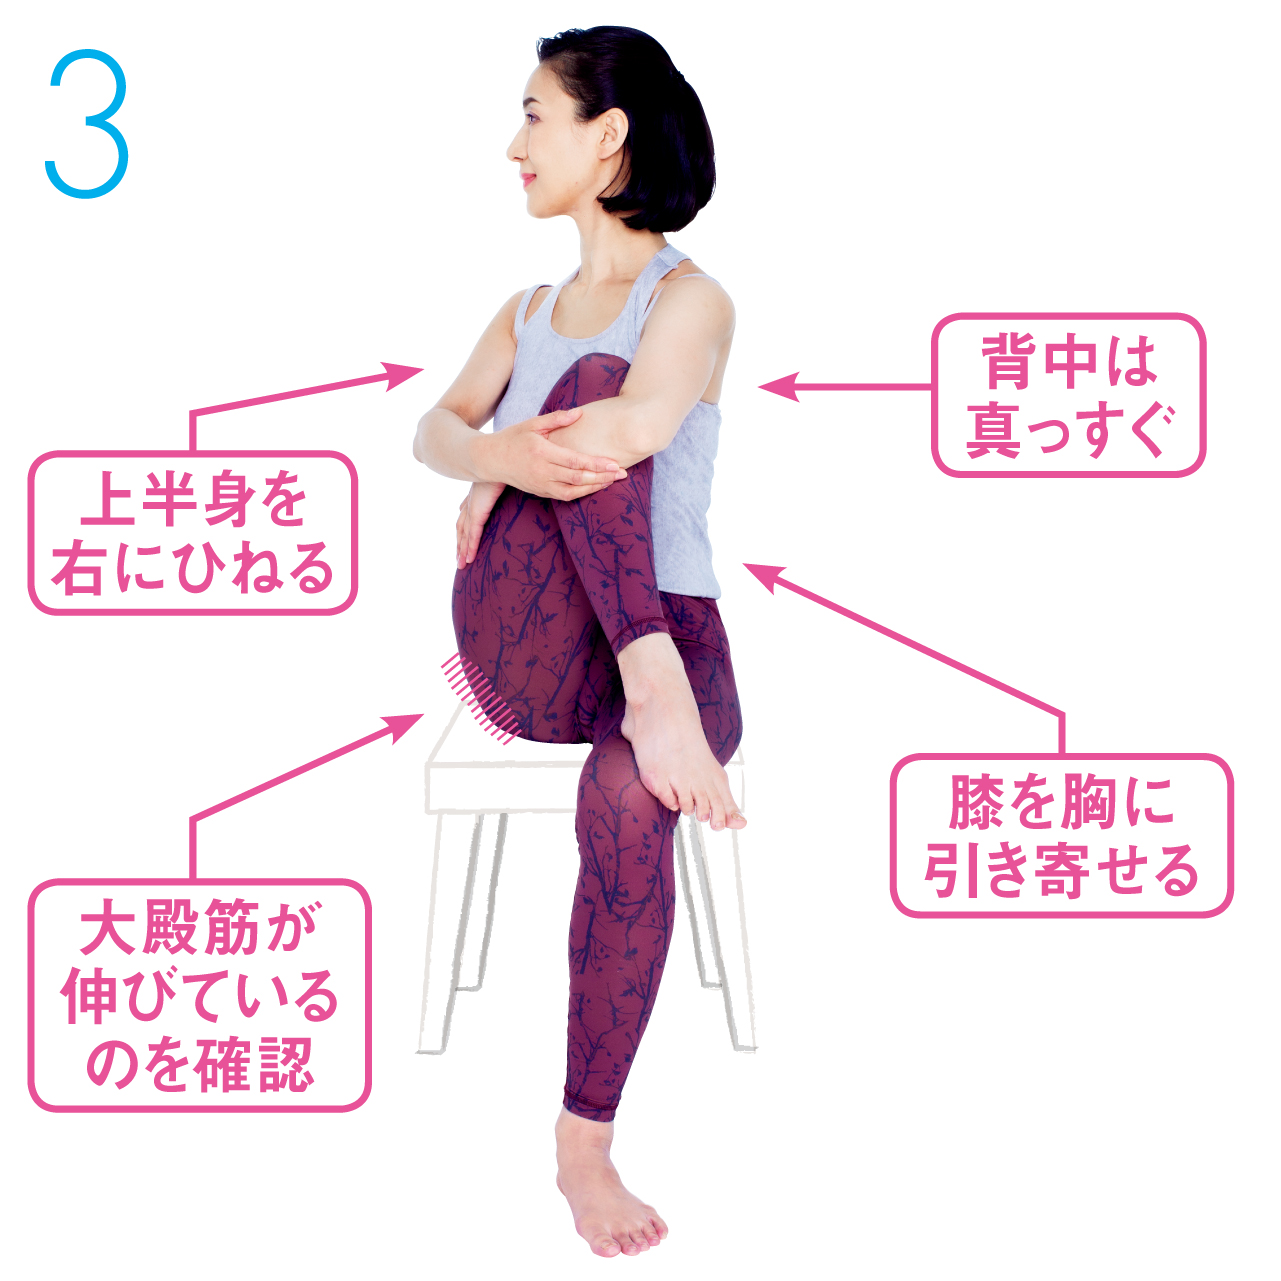 右膝を体に引きつけたまま、上体と顔を右に向けます。お尻の筋肉（大殿筋）が伸びているのを確認しながら、30秒キープします。反対側も同様に